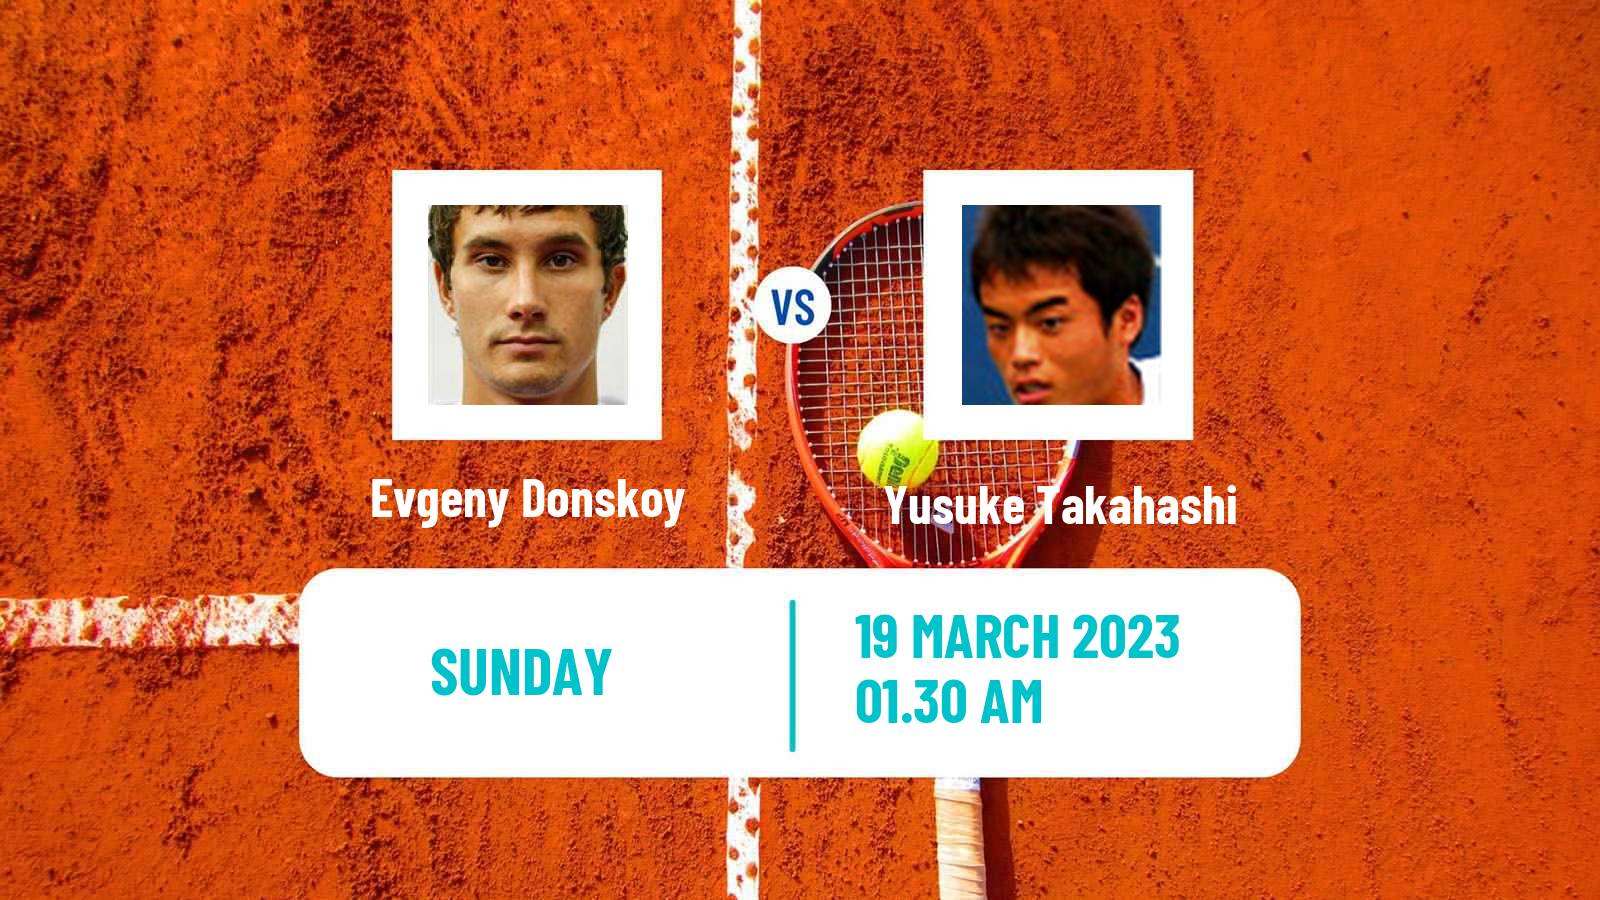 Tennis ITF Tournaments Evgeny Donskoy - Yusuke Takahashi